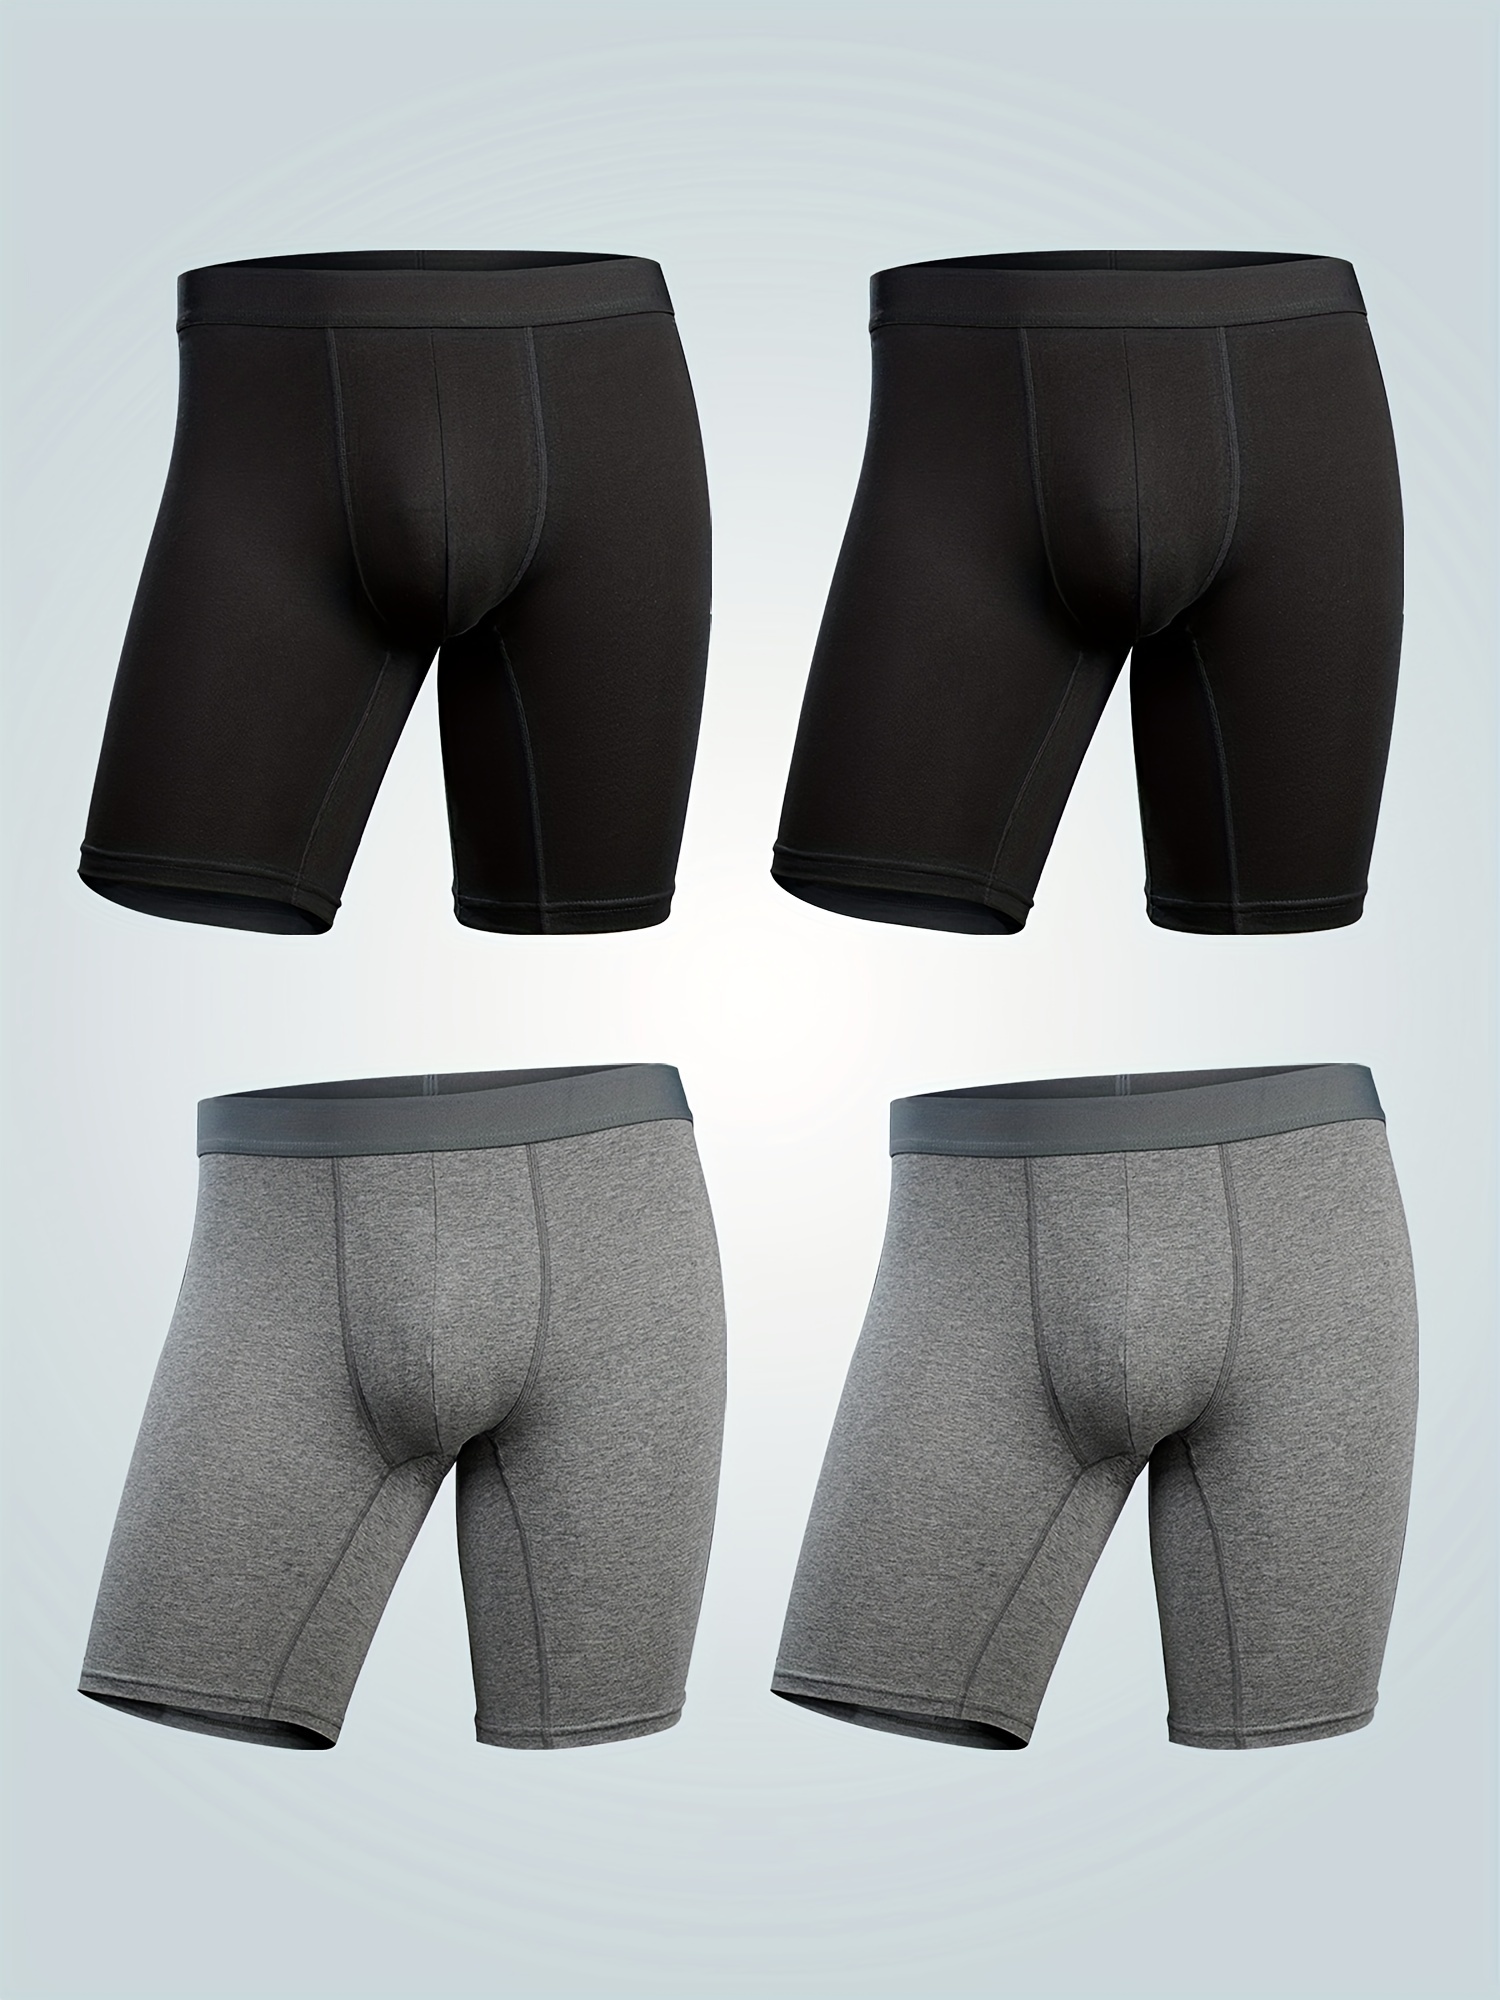 Boxer Shorts Men Panties Long Leg Cotton Underpants Male Underwear